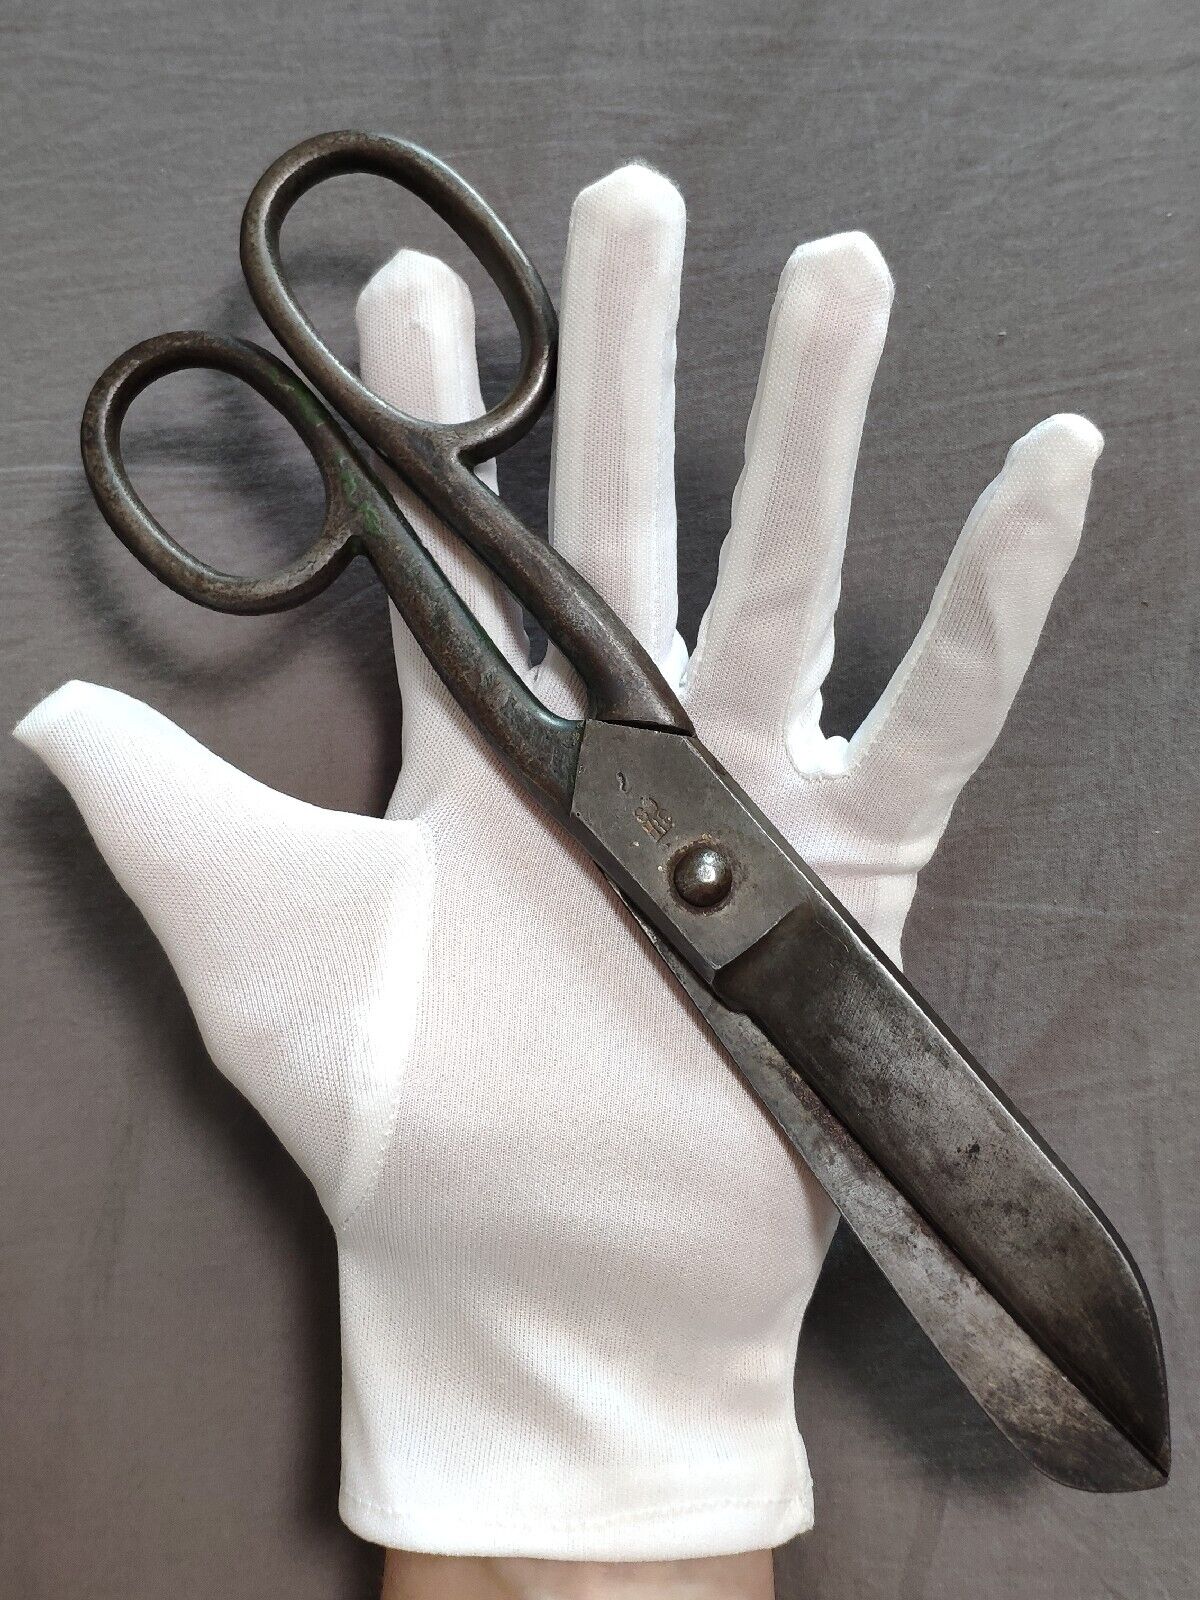 Vintage large 25 cm scissors USSR. Decor Steampunk